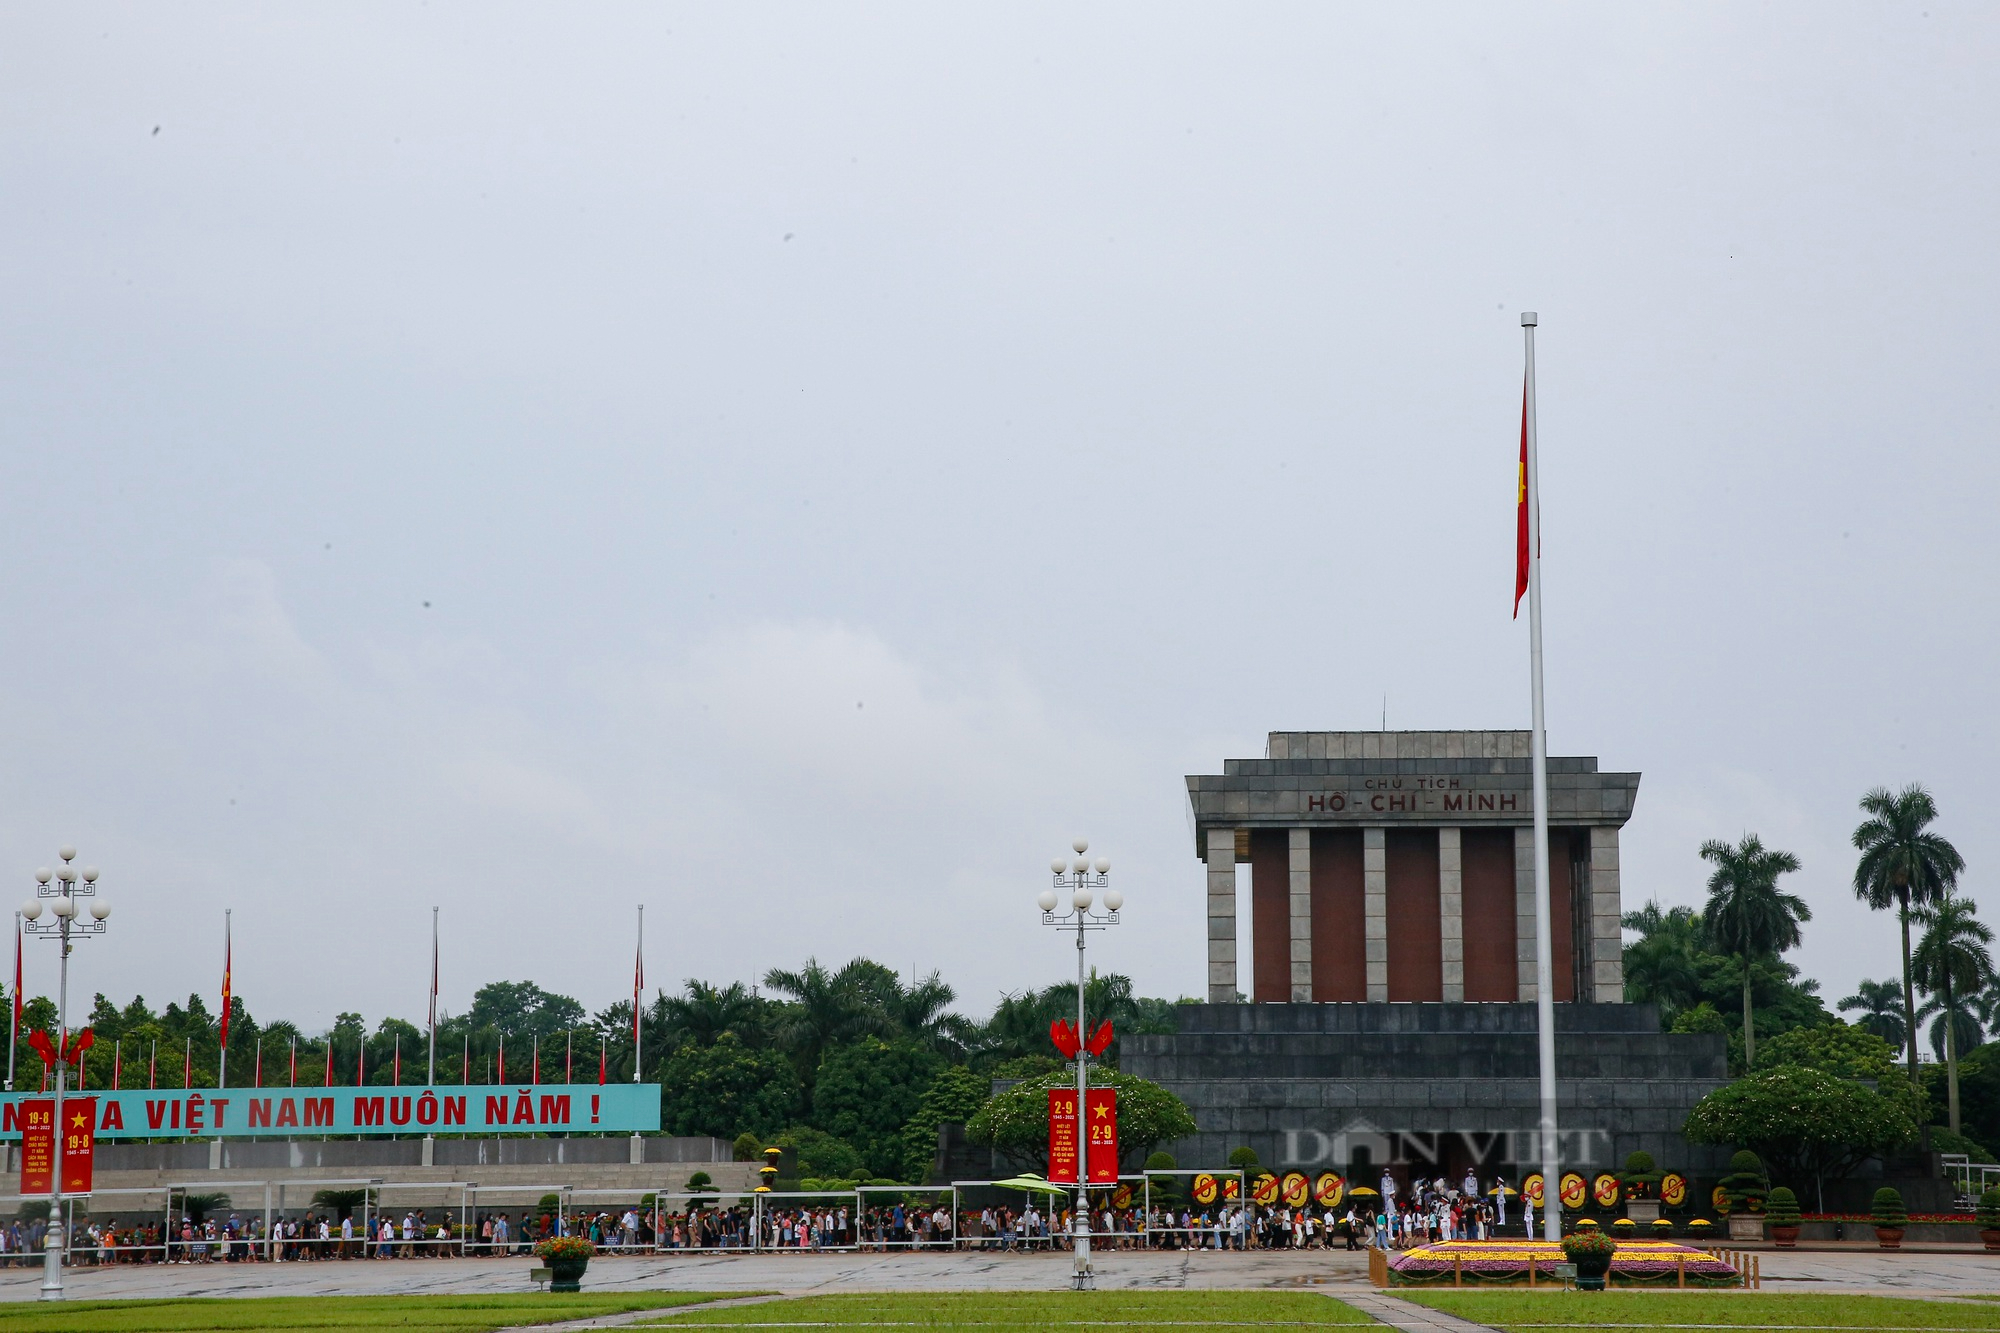 Khu vui chơi tại Hà Nội vắng lặng, người dân xếp hàng dài vào Lăng viếng Chủ tịch Hồ Chí Minh - Ảnh 12.